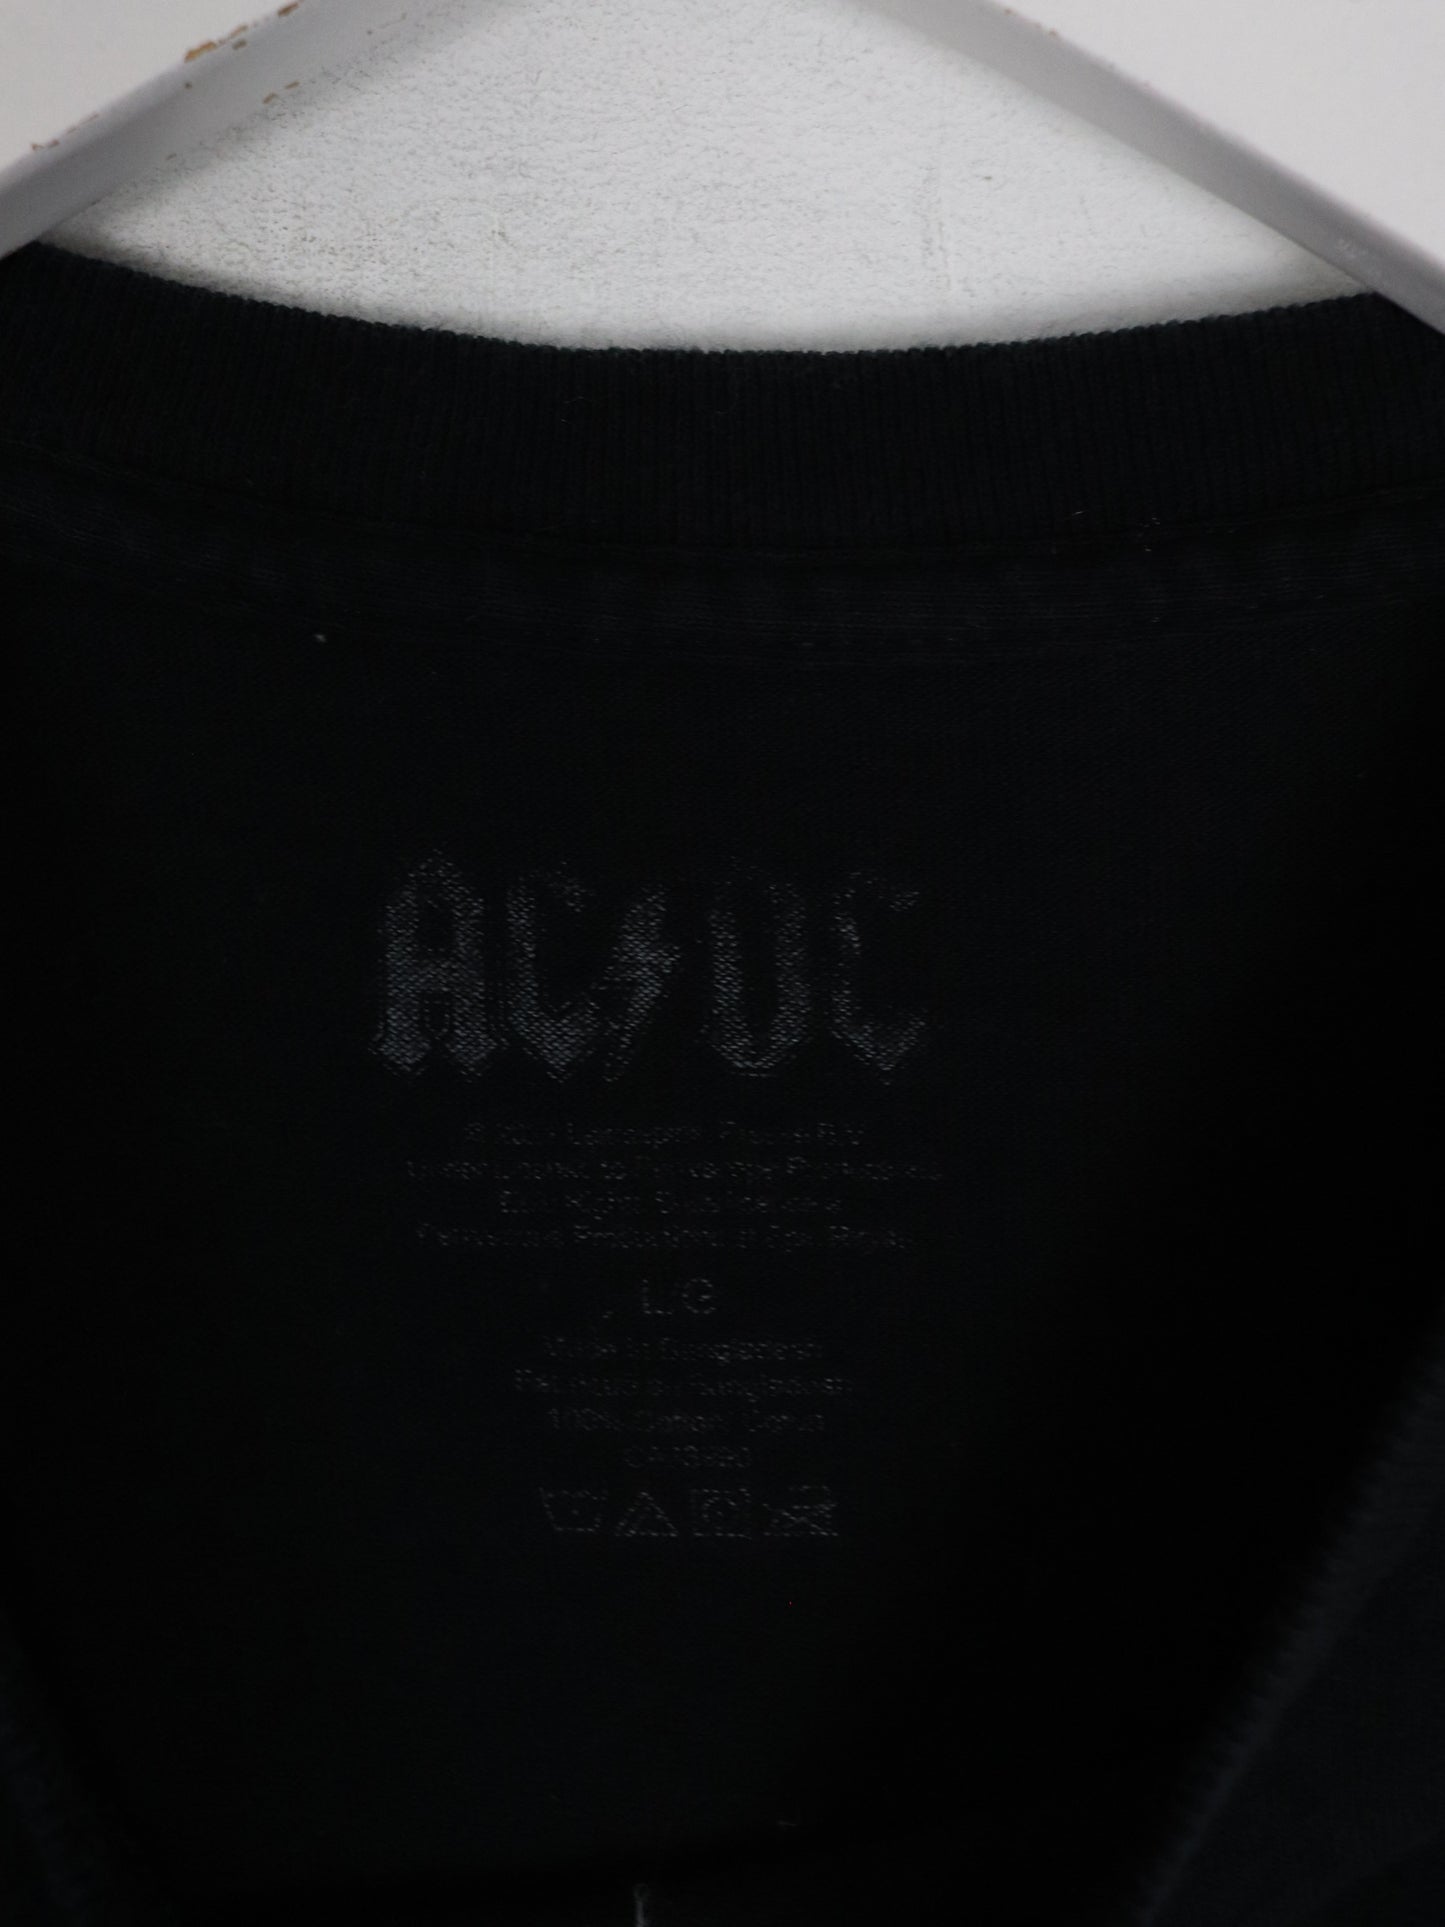 AC/DC T Shirt Mens Large Black Band Concert Tour